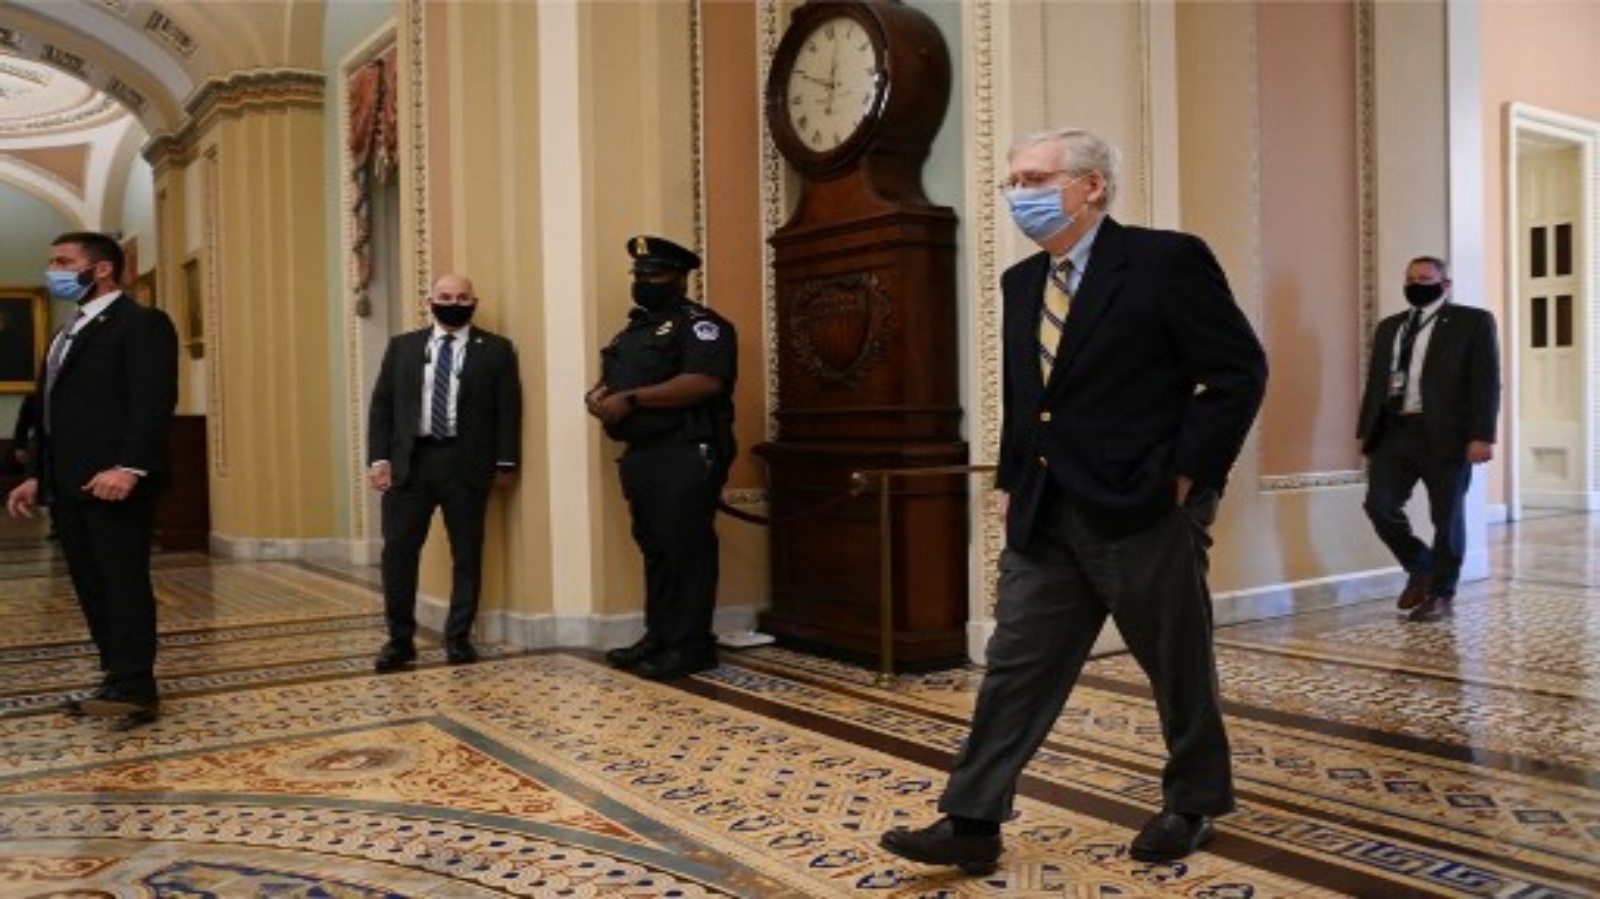 زعيم الأقلية الجمهورية في مجلس الشيوخ ميتش ماكونيل يصل إلى مبنى الكابيتول في اليوم الخامس من المحاكمة الثانية لعزل الرئيس الأمريكي السابق دونالد ترامب ، في 13 فبراير 2021 ، في واشنطن العاصمة.